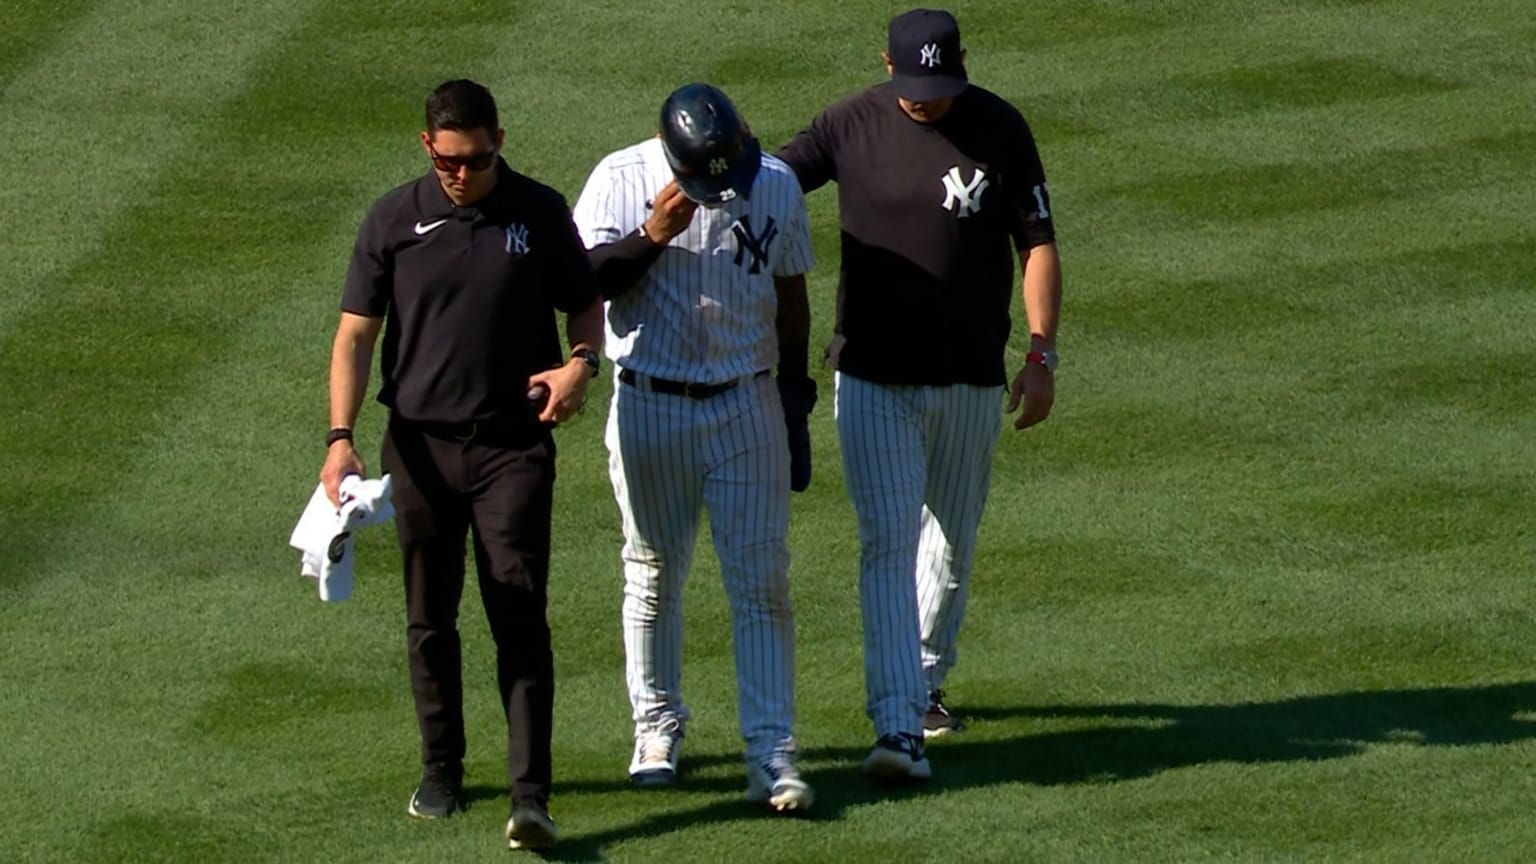 Yankees' Gleyber Torres has 'mild' ankle injury